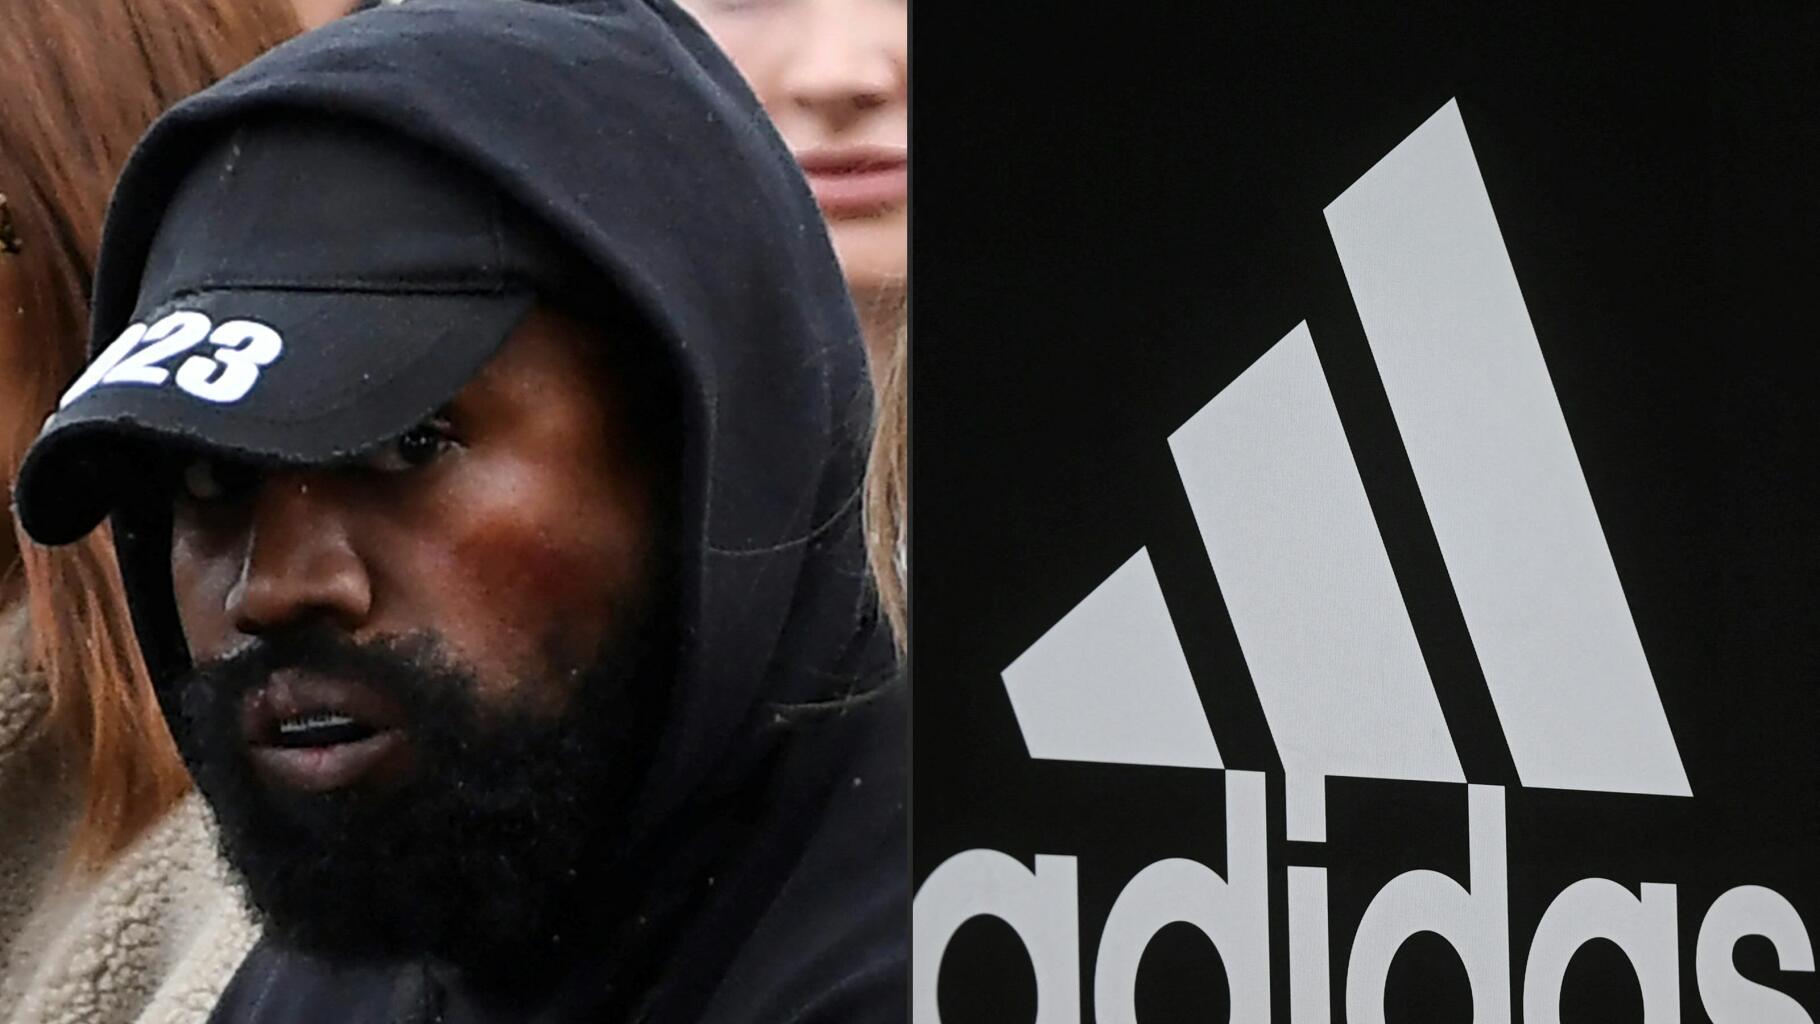 Adidas leitet nach Vorwürfen von Mitarbeitern gegen Kanye West eine interne Untersuchung ein